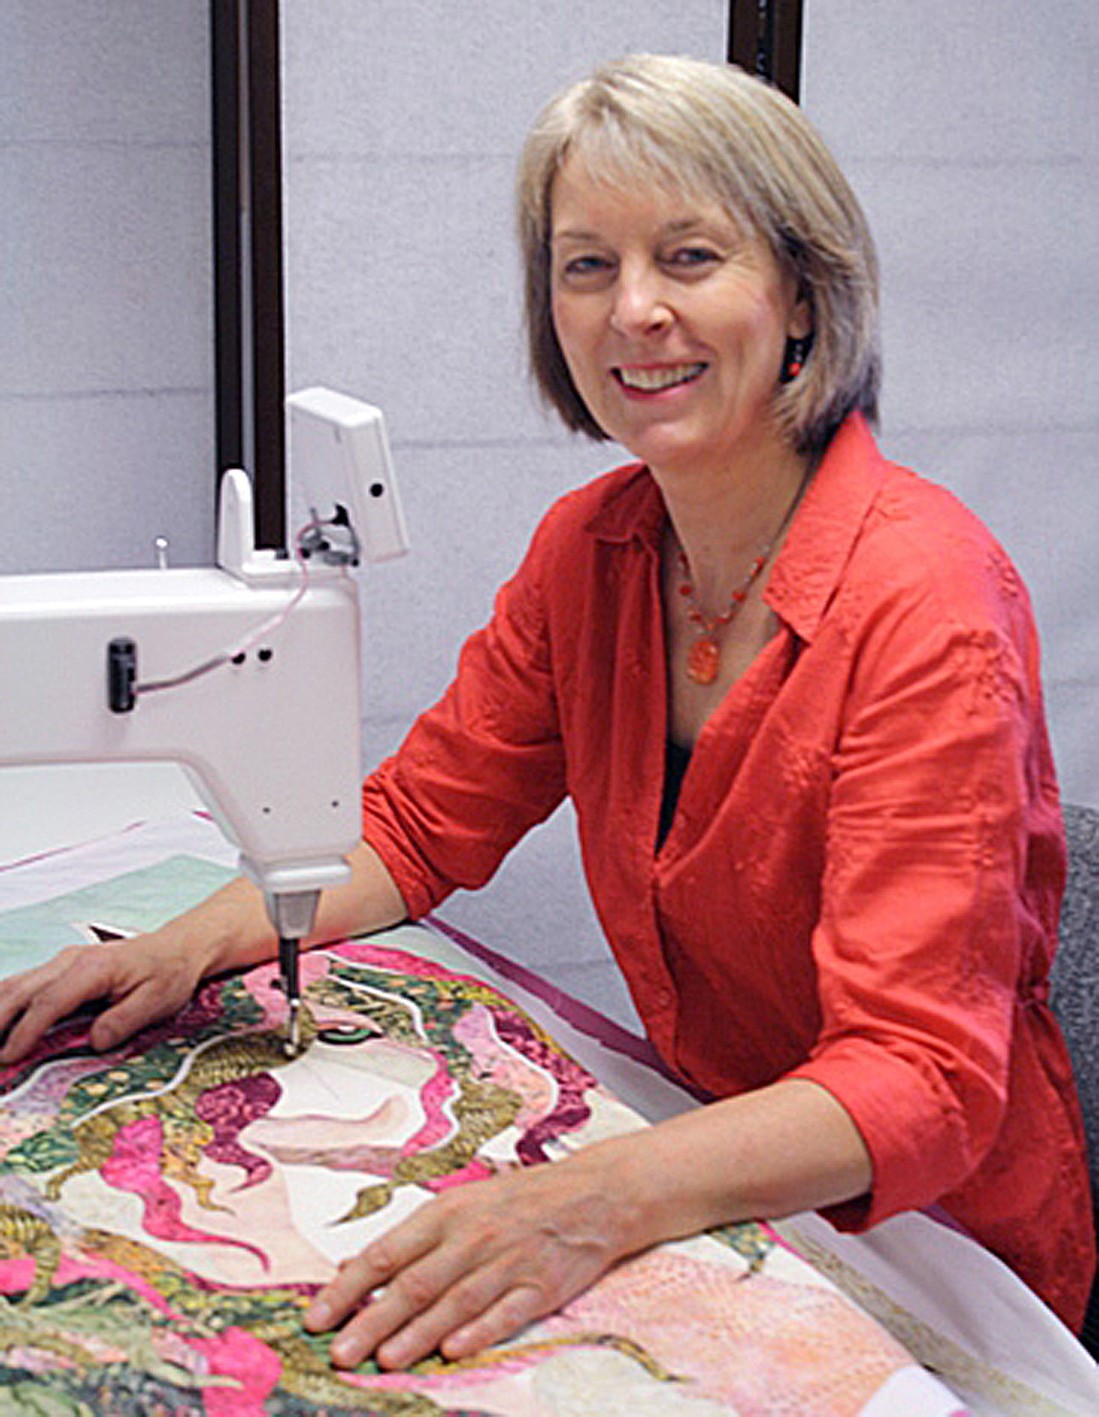 Lise Belanger, artist and designer